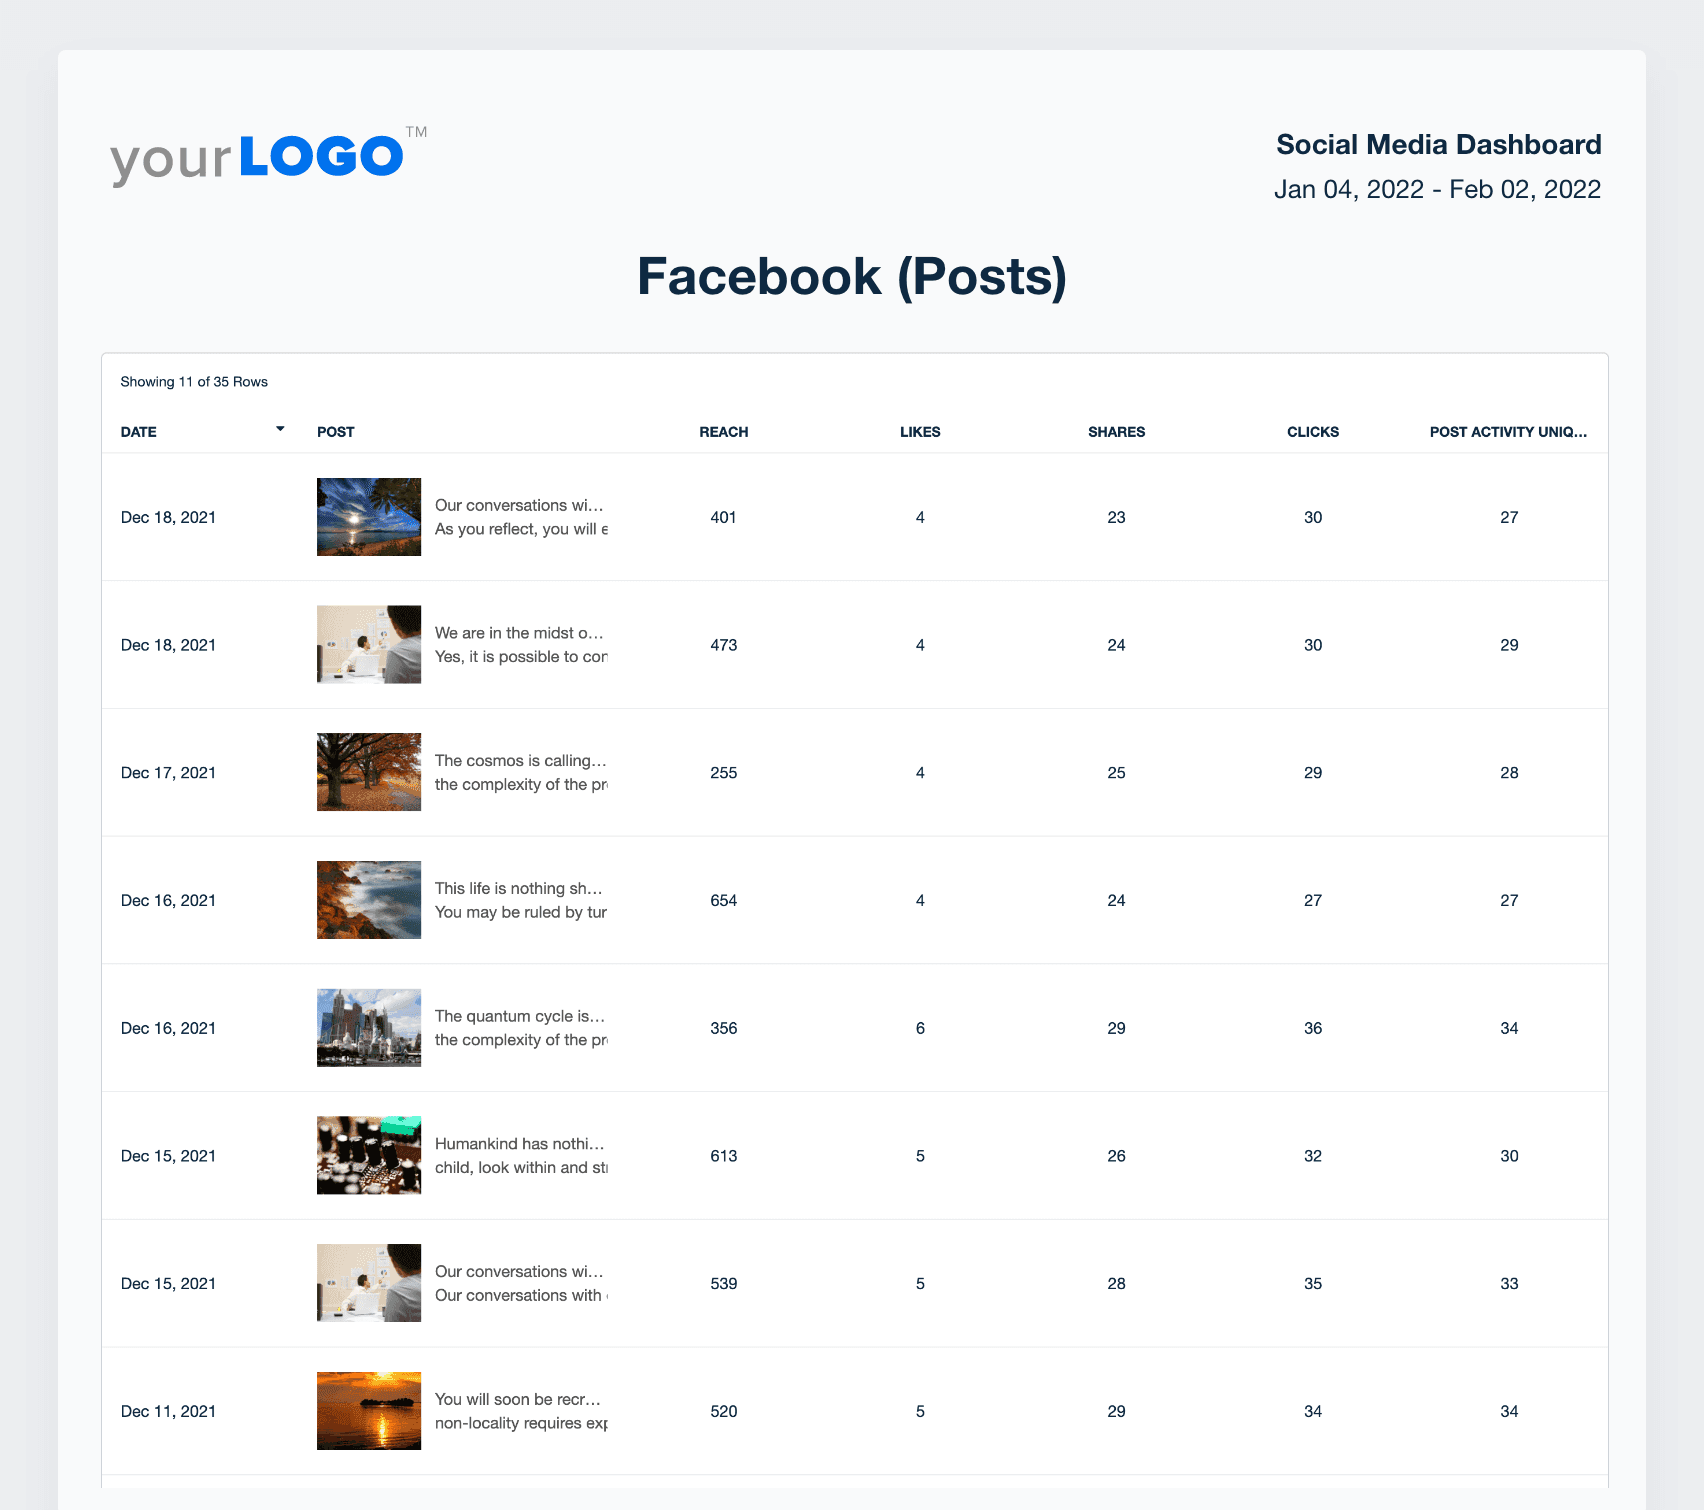 A screenshot of Facebook post data